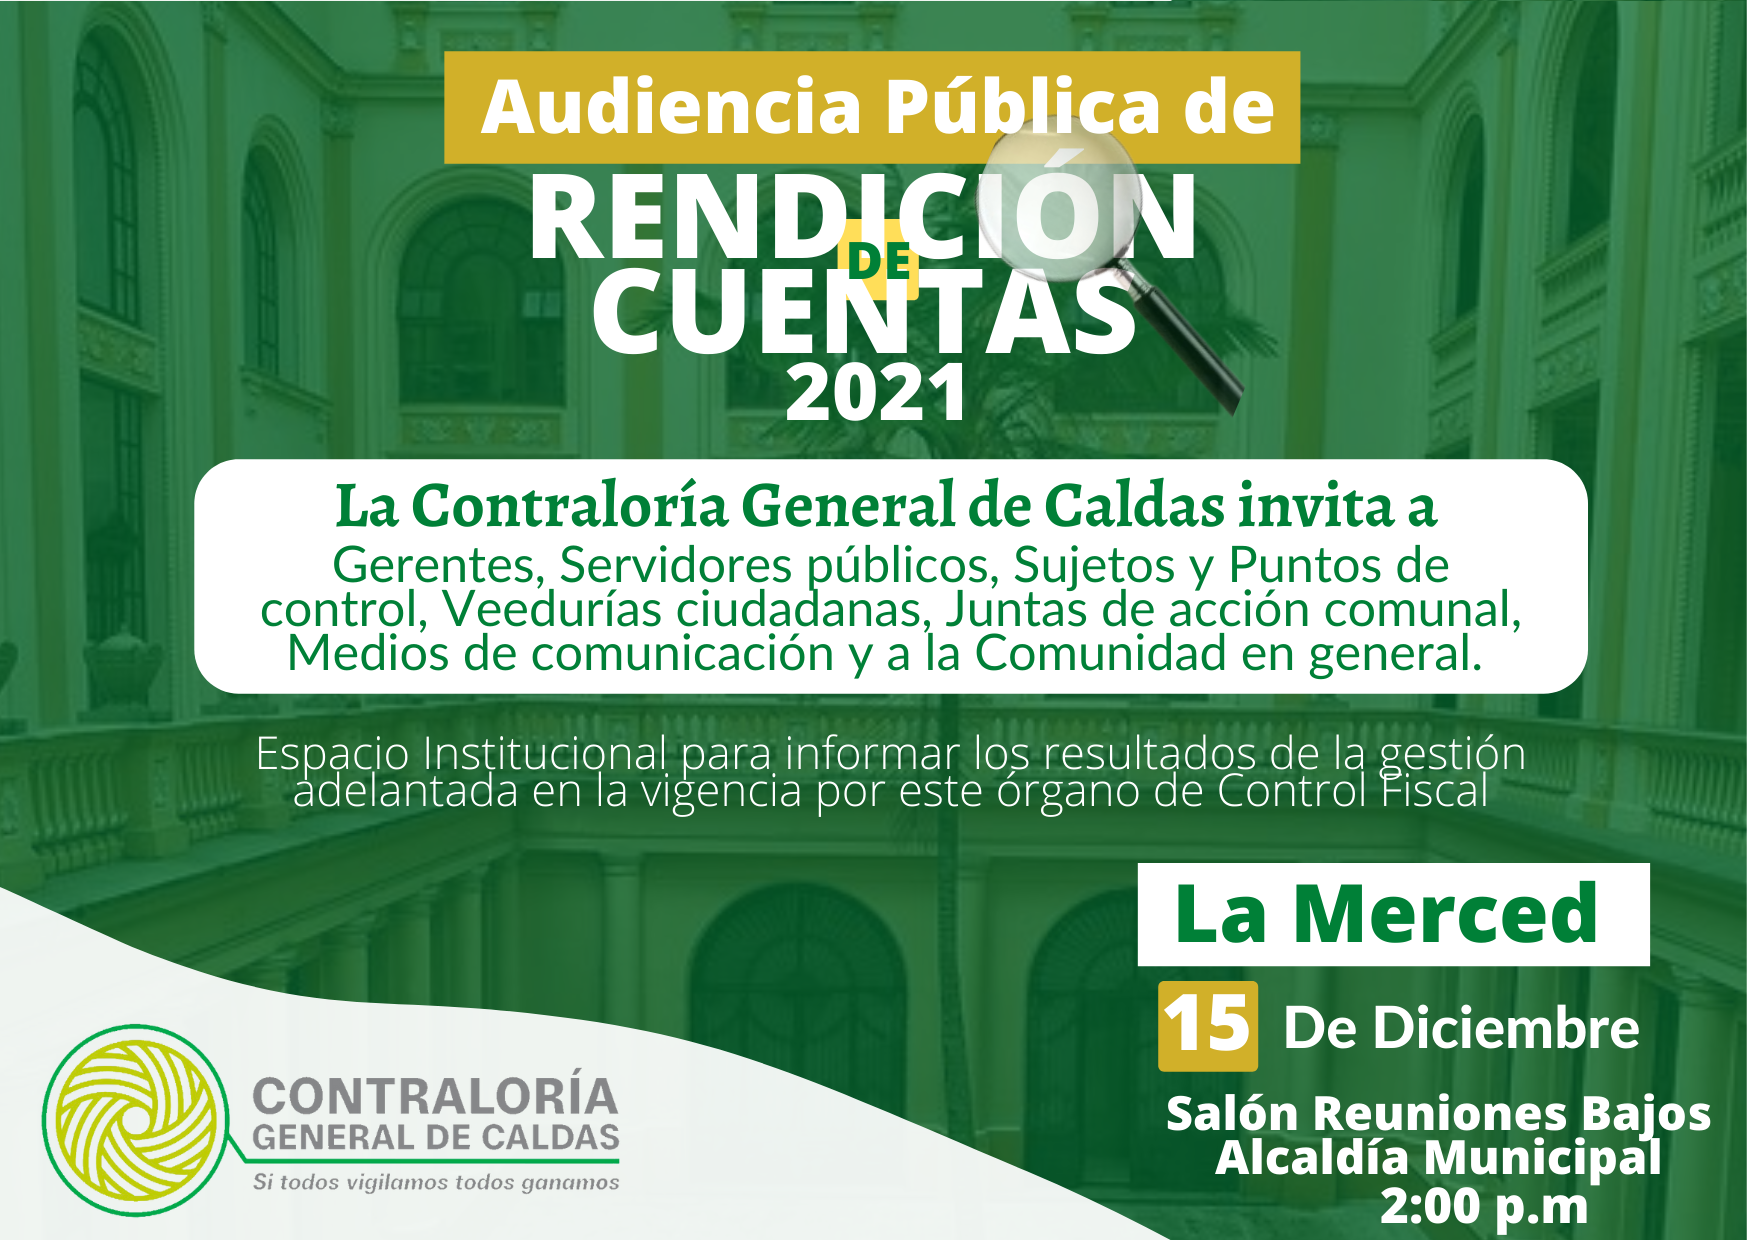 En este momento estás viendo La Contraloría General de Caldas invita a la Audiencia Pública de Rendición de cuentas de la Vigencia 2021 que se realizará el día 15 de Diciembre, en el Municipio de La Merced.